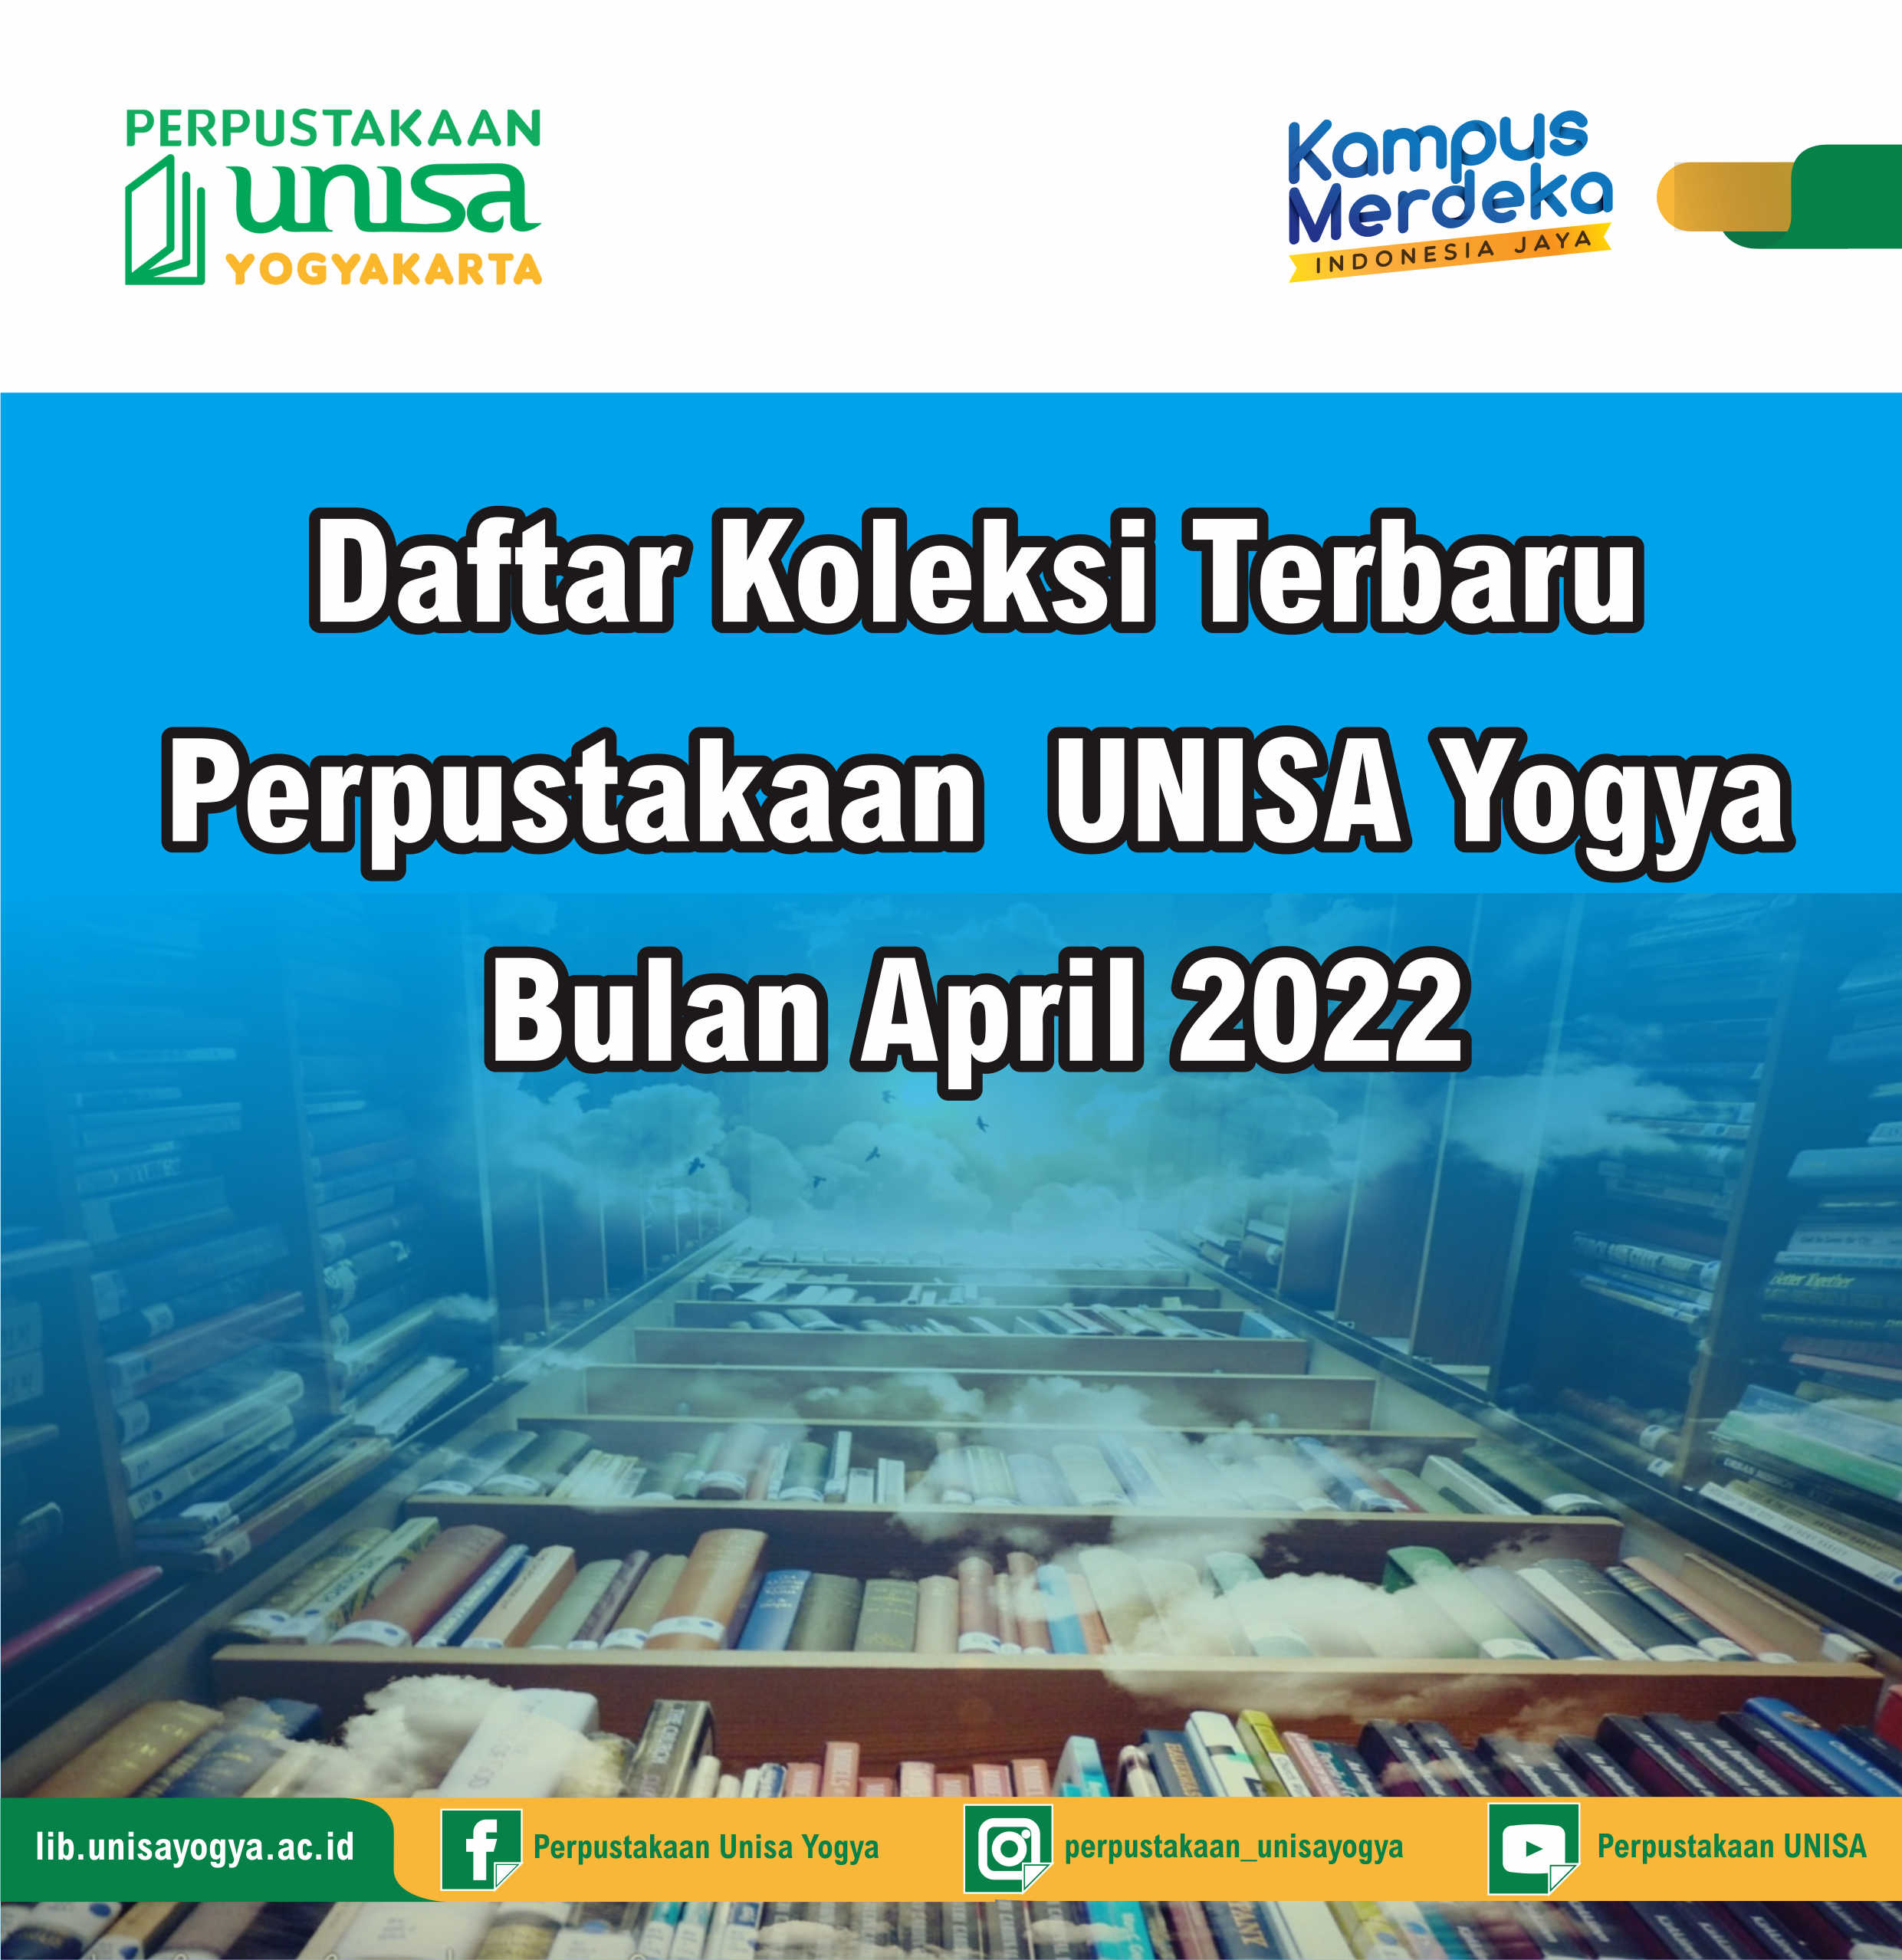 Daftar Koleksi Terbaru Perpustakaan UNISA Yogya Bulan April 2022